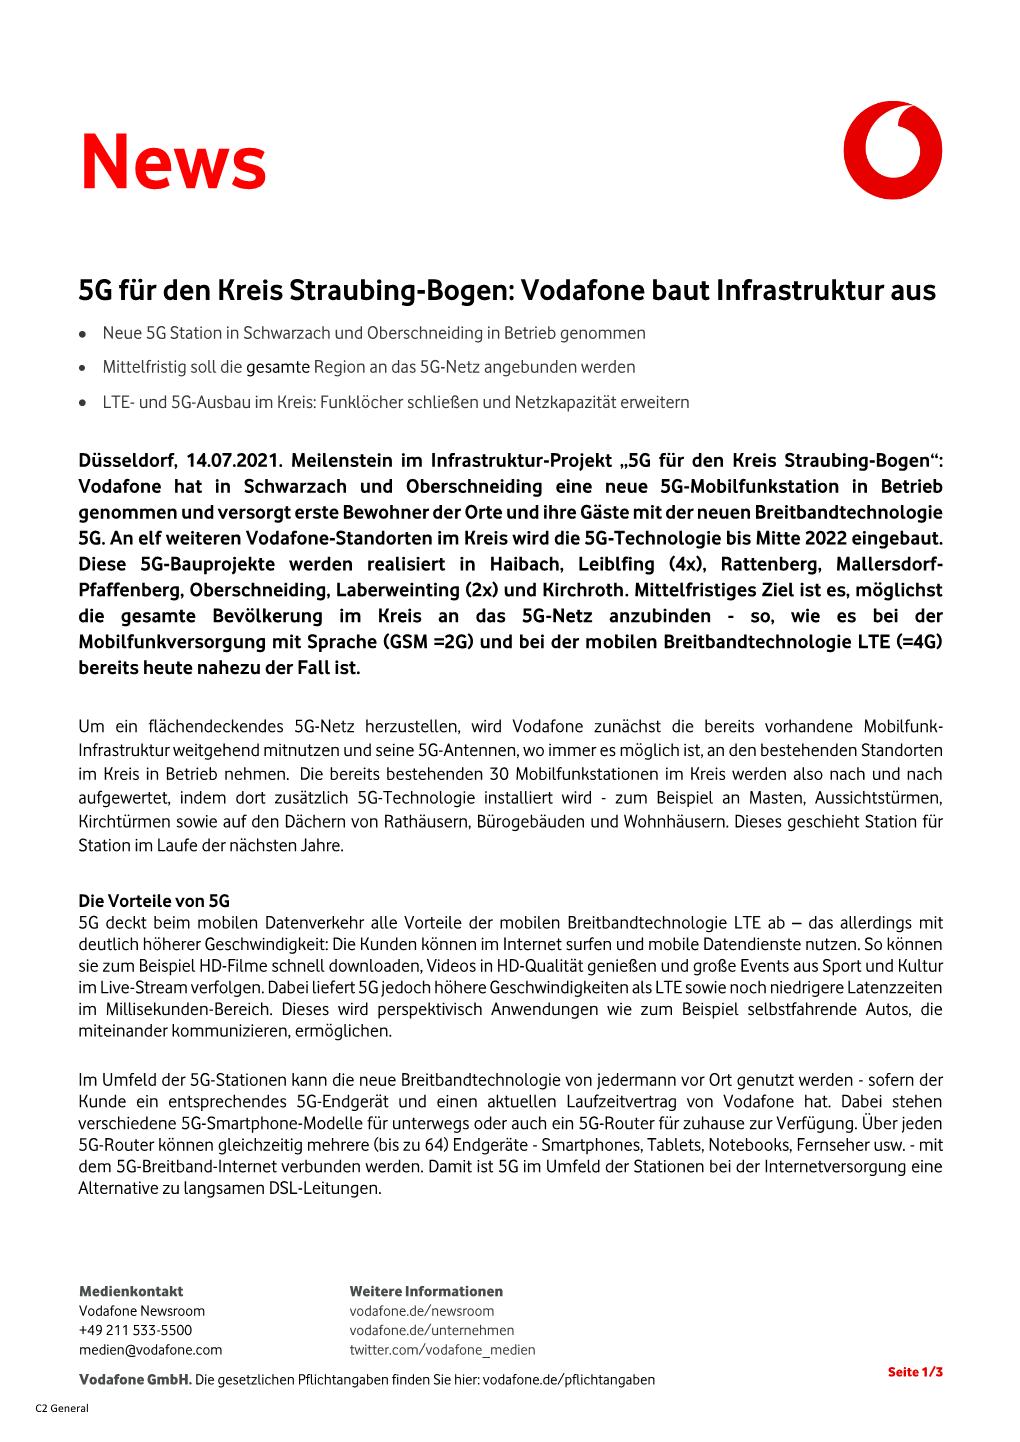 5G Für Den Kreis Straubing-Bogen: Vodafone Baut